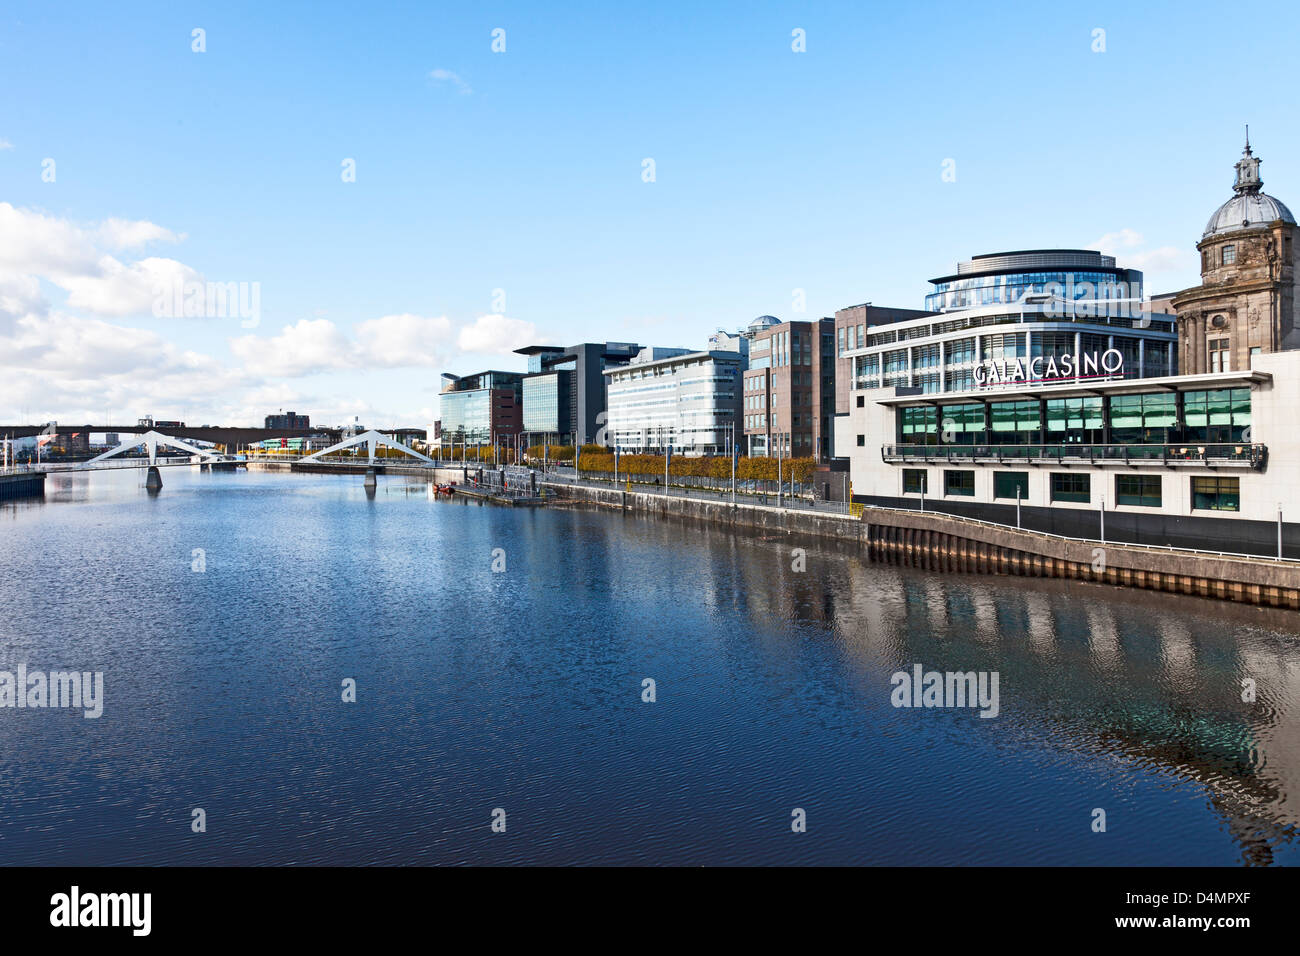 IFSD distretto di Glasgow: Gala Casino - Broomielaw / Atlantic Quay - Tradeston / Ponte sottolineatura ondulate Foto Stock